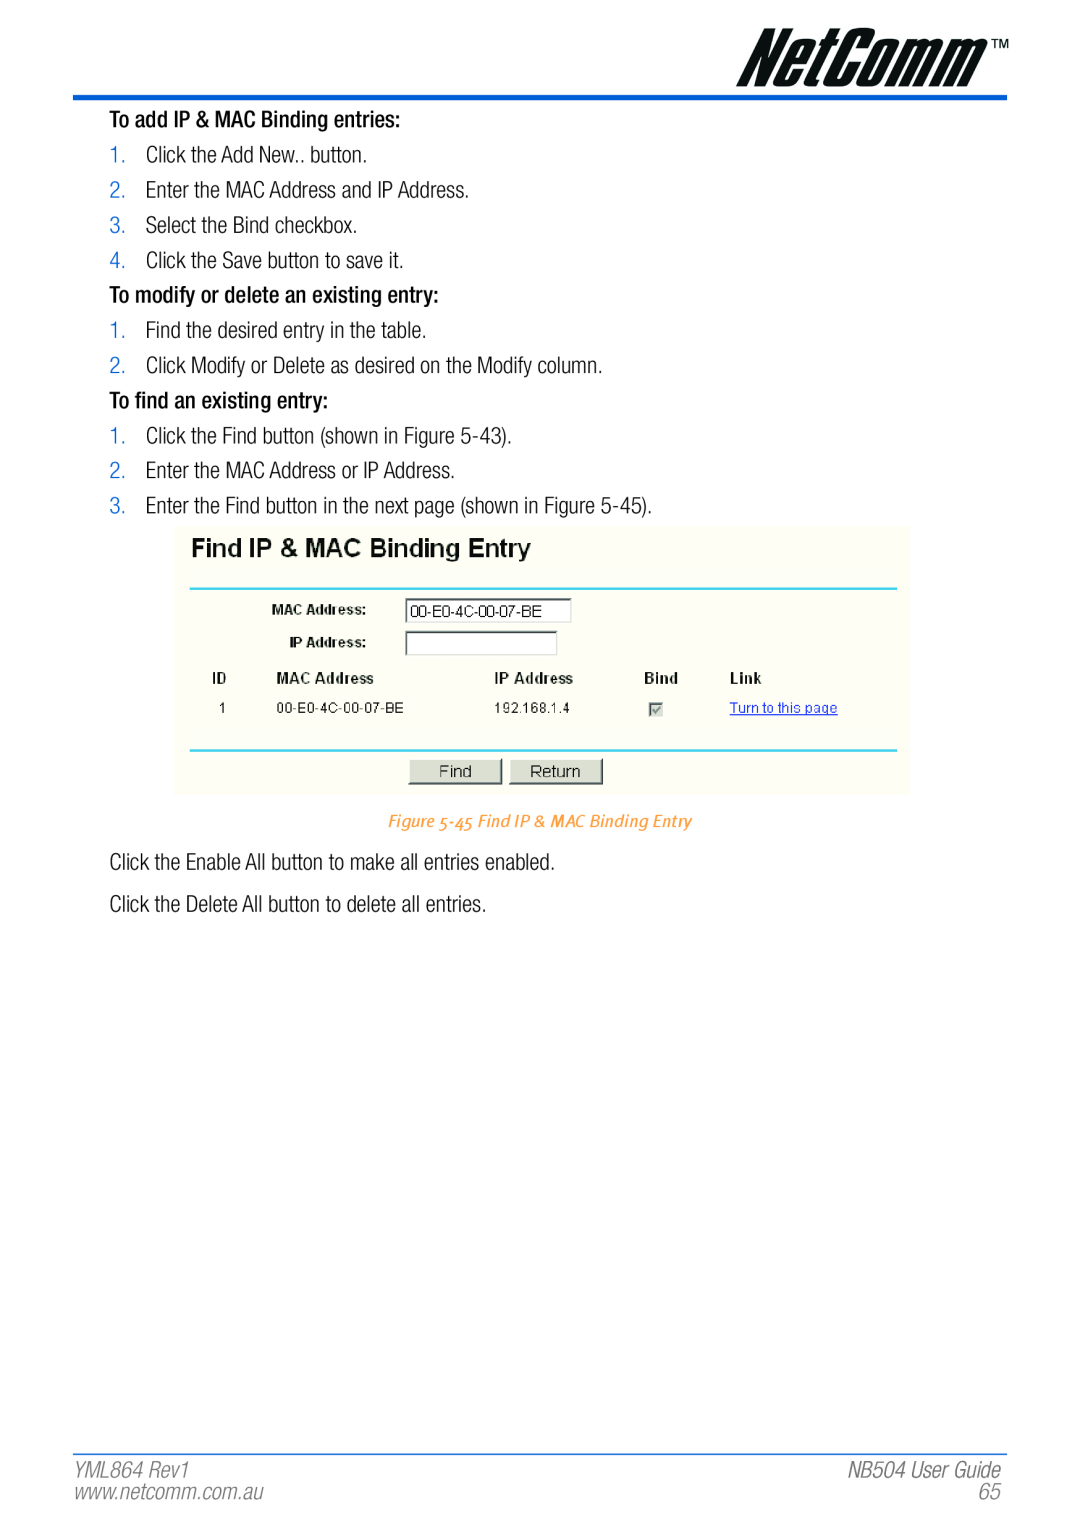 NetComm NB504 manual YML864 Rev1, 45 Find IP & MAC Binding Entry 